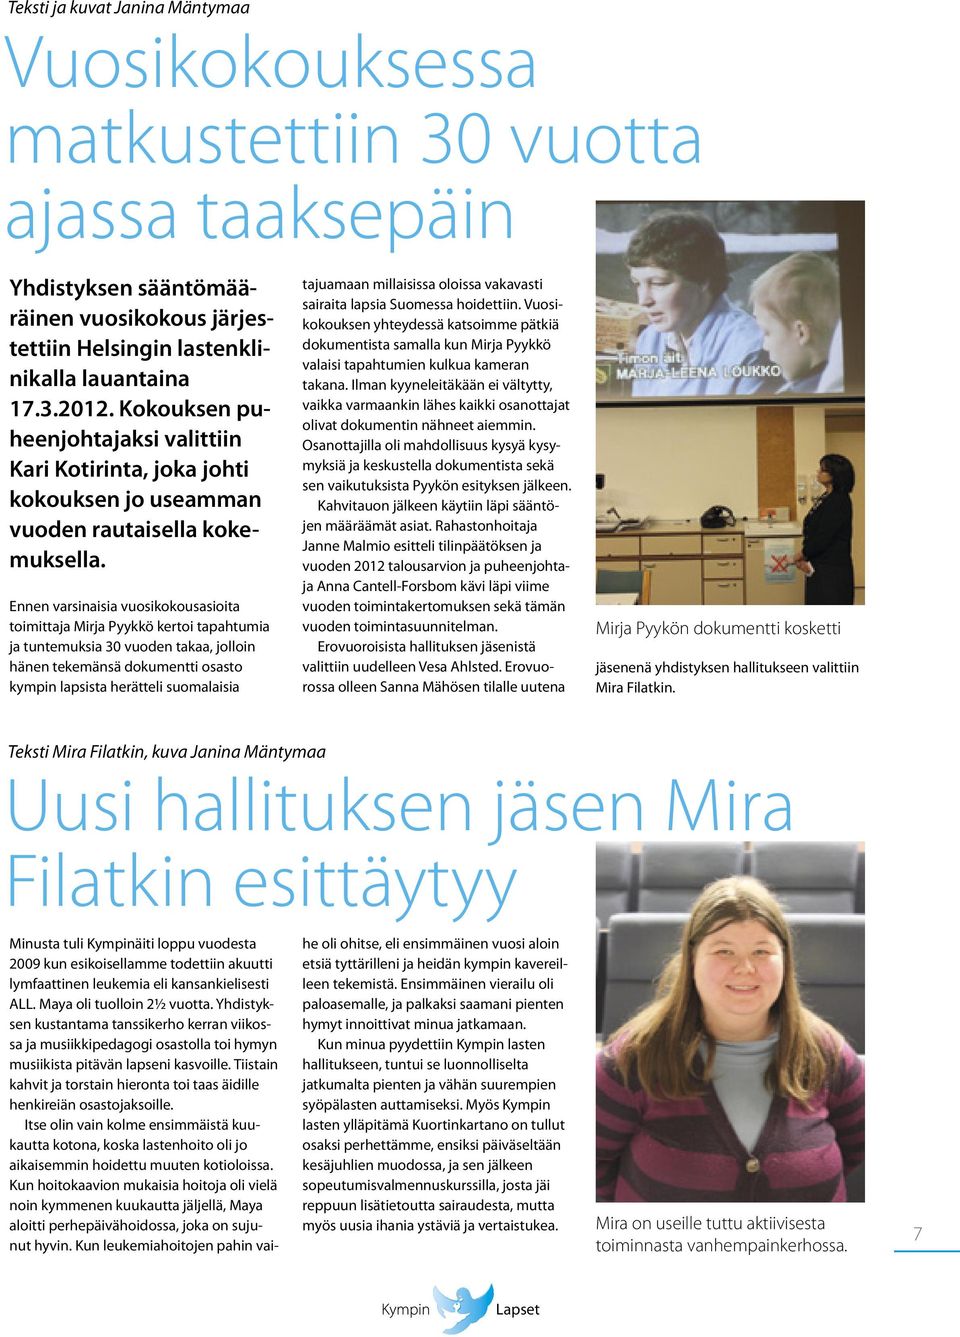 Ennen varsinaisia vuosikokousasioita toimittaja Mirja Pyykkö kertoi tapahtumia ja tuntemuksia 30 vuoden takaa, jolloin hänen tekemänsä dokumentti osasto kympin lapsista herätteli suomalaisia